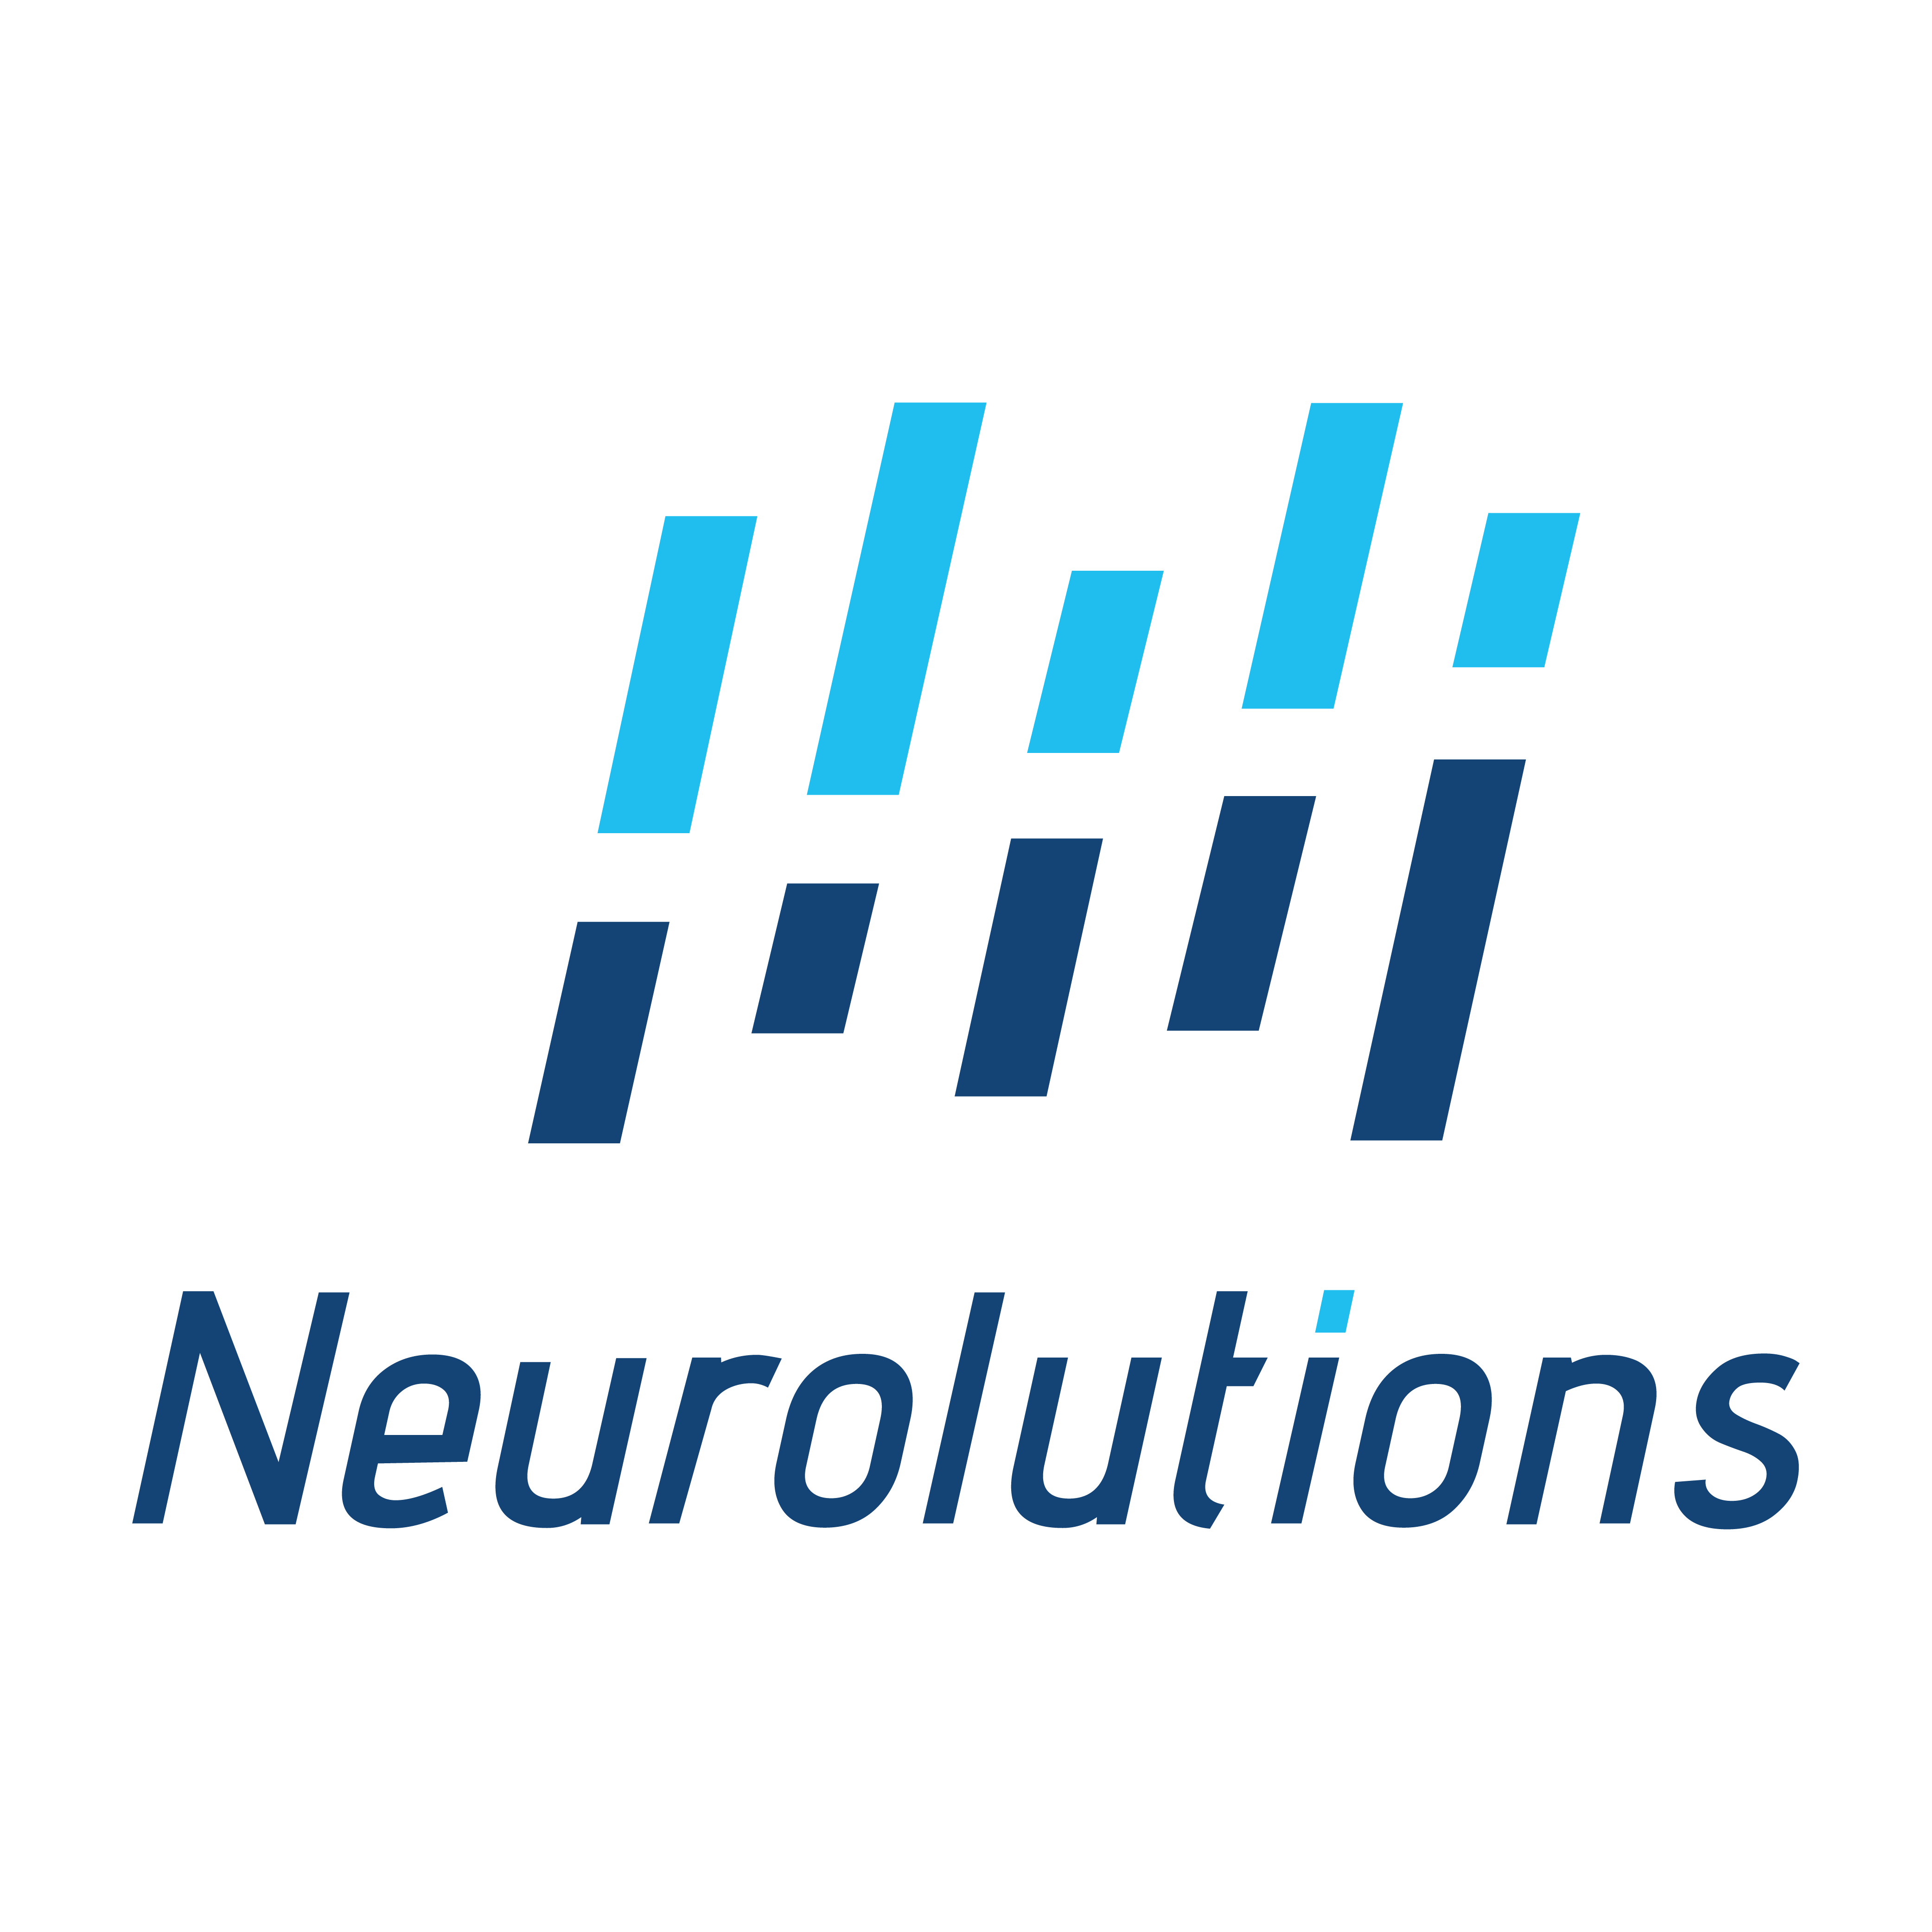 Neurolutions Logo - Square - Blue.png